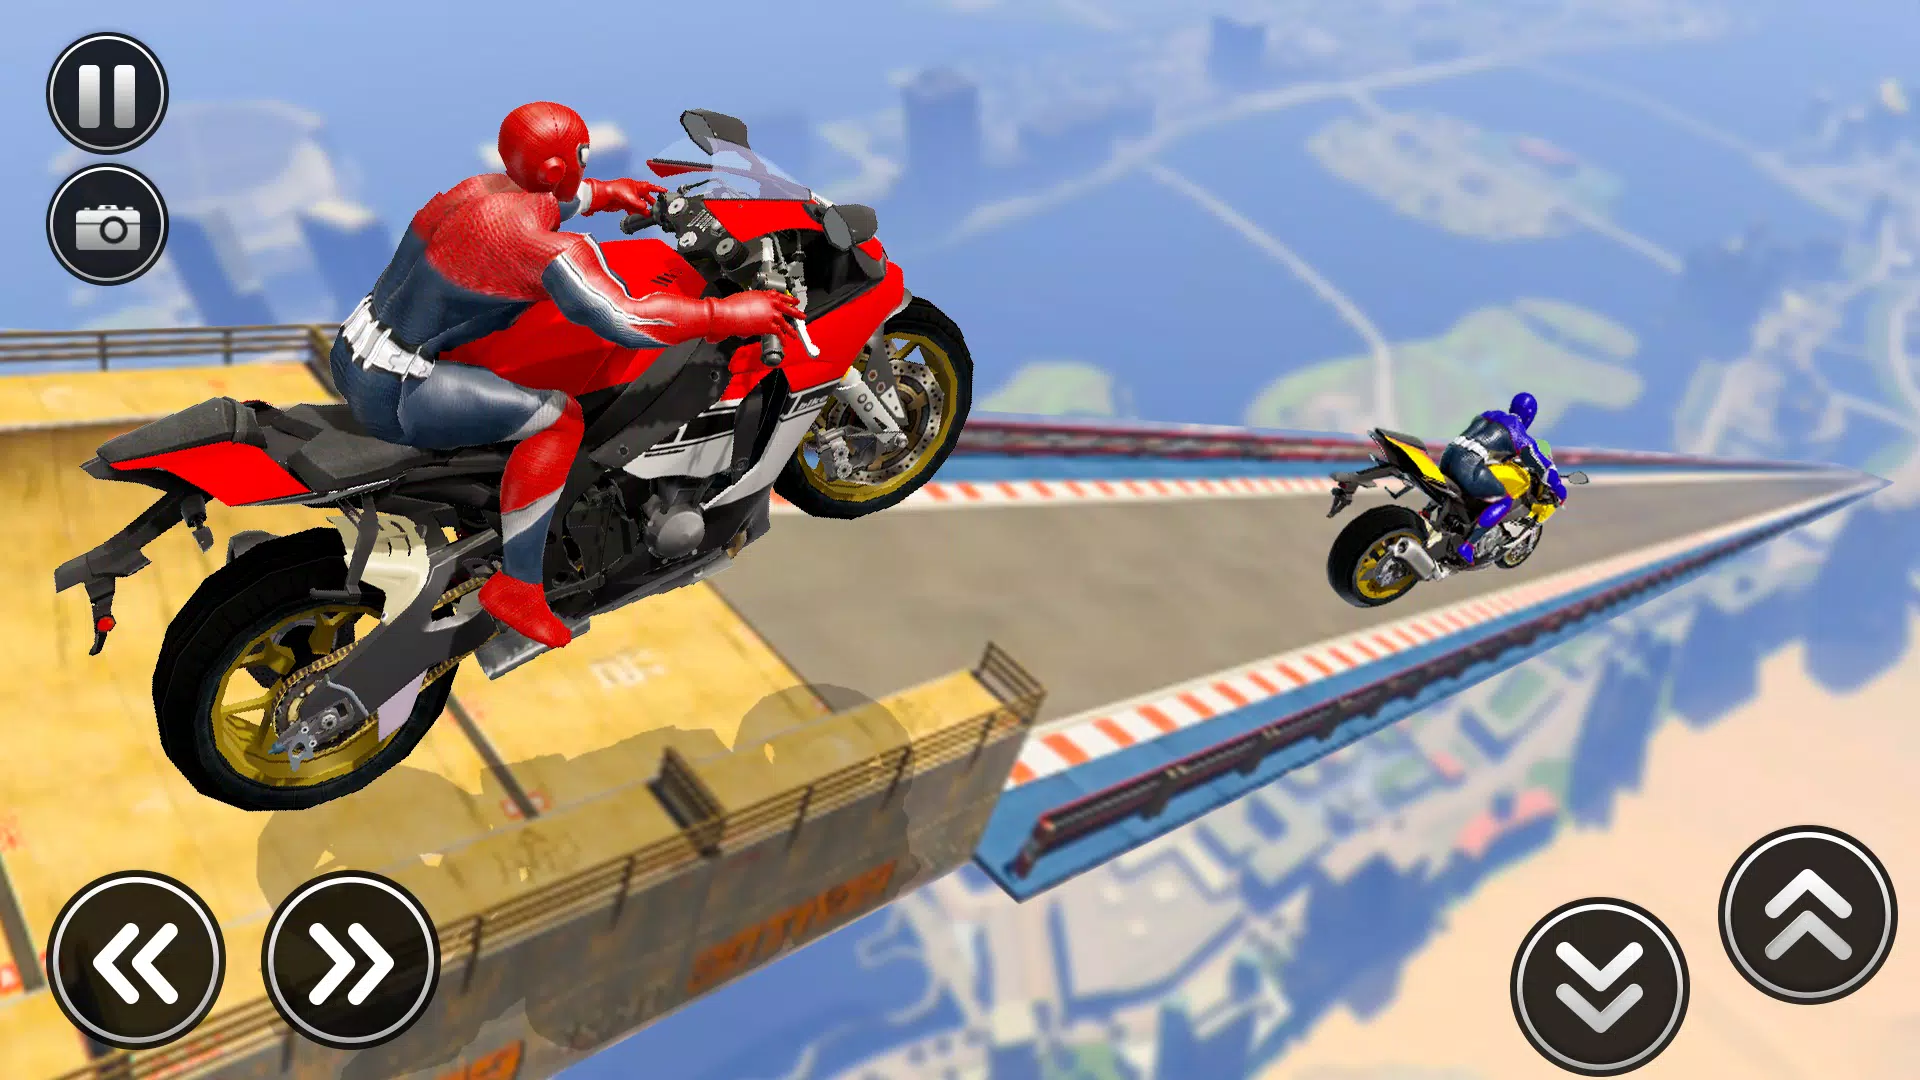 GT Mega Ramp Stunt Bike Games for Android - APK Download